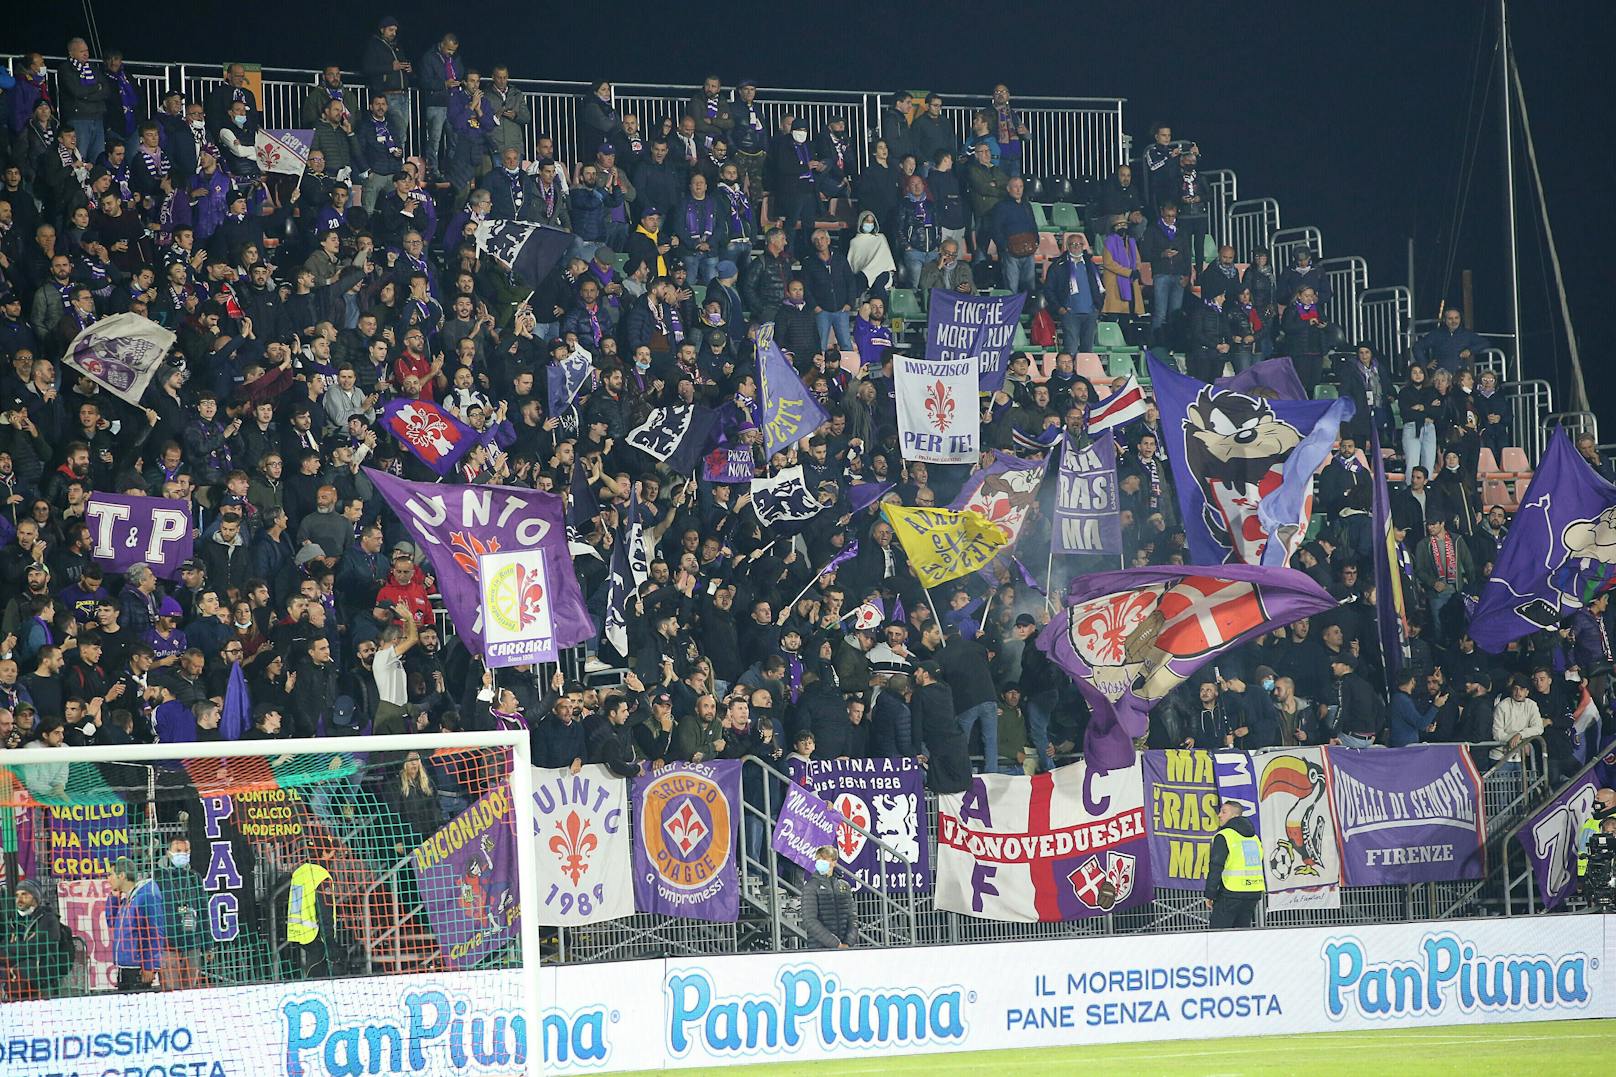 Fiorentina-Fans sorgten in Italien für einen Rassismus-Eklat